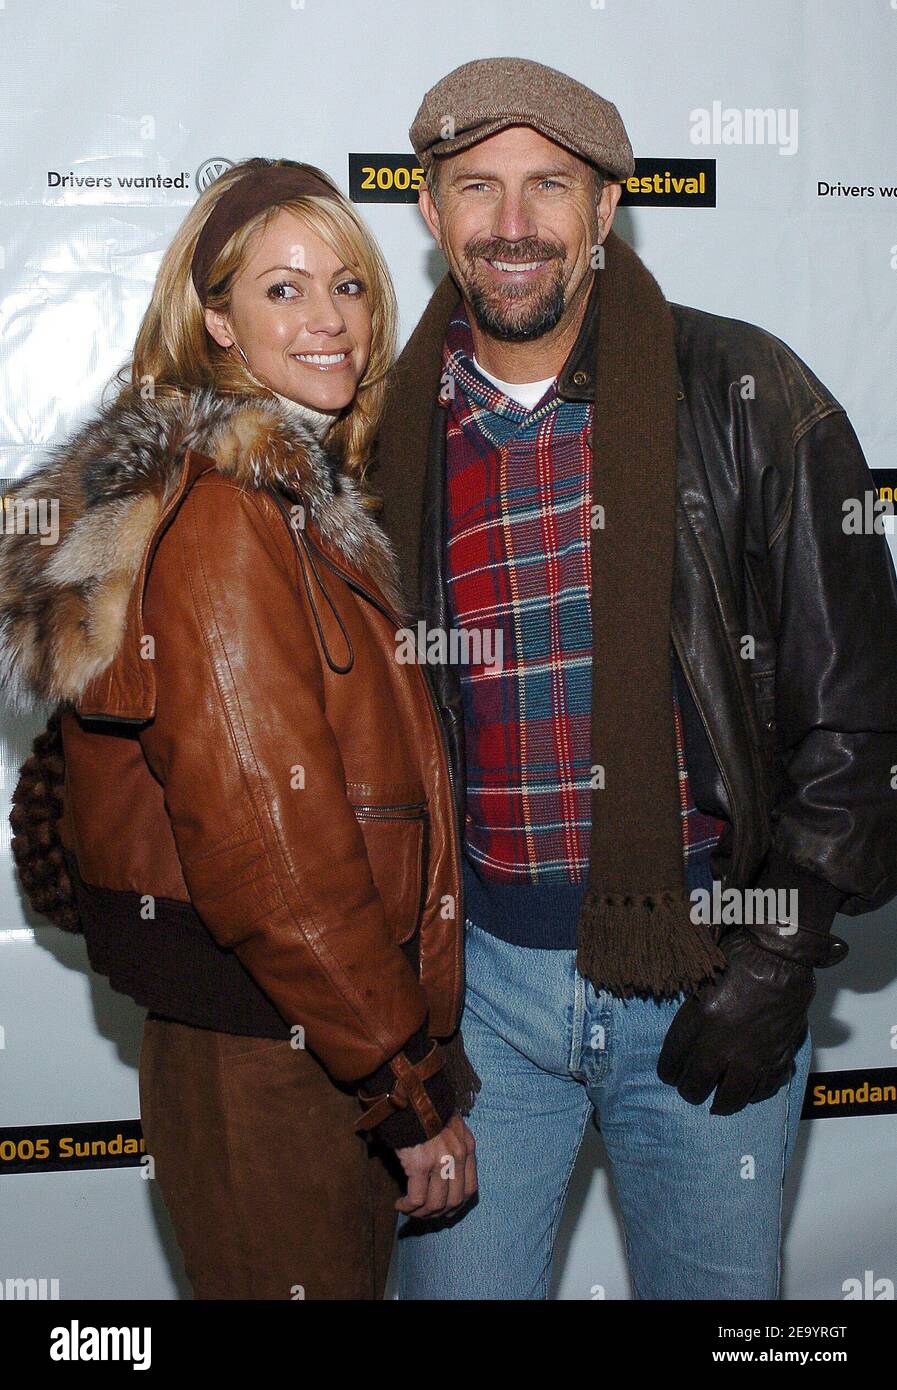 Das Darstellermitglied Kevin Costner und seine Frau Christine Baumgartner nehmen am 22. Januar 2005 an der Vorführung "Upside of Anger" beim Sundance Film Festival 2005 in Park City, Utah, Teil. Foto von Lionel Hahn/ABACA. Stockfoto